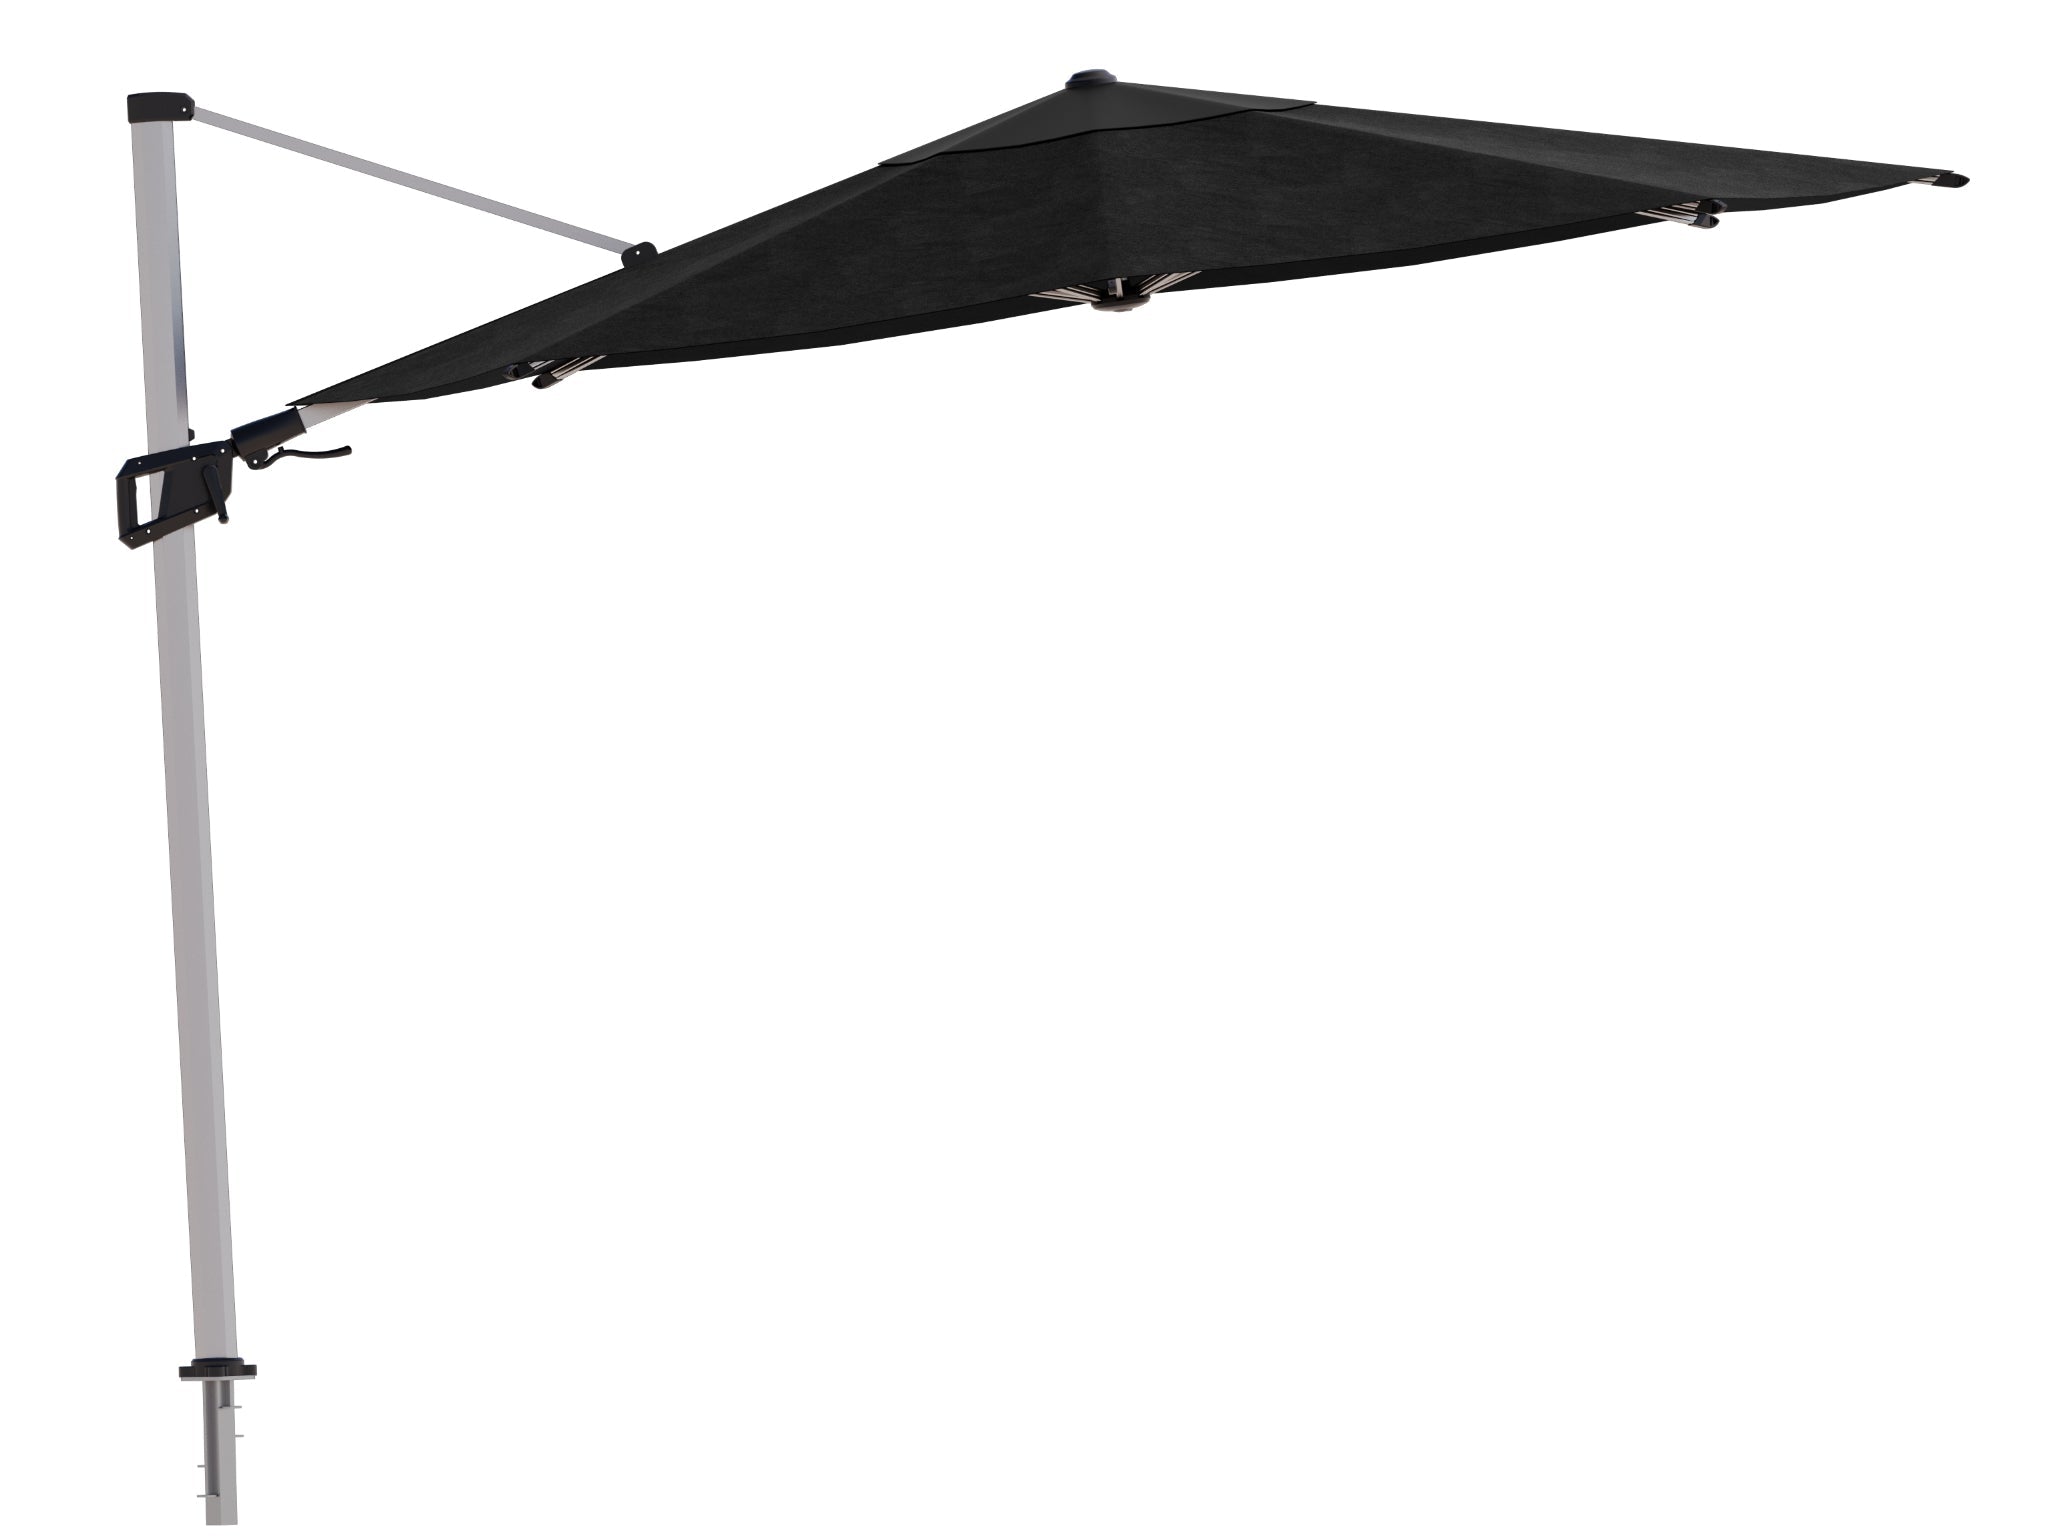 Coolaroo Ventus 3.5m Round Wind Rated Cantilever Umbrella